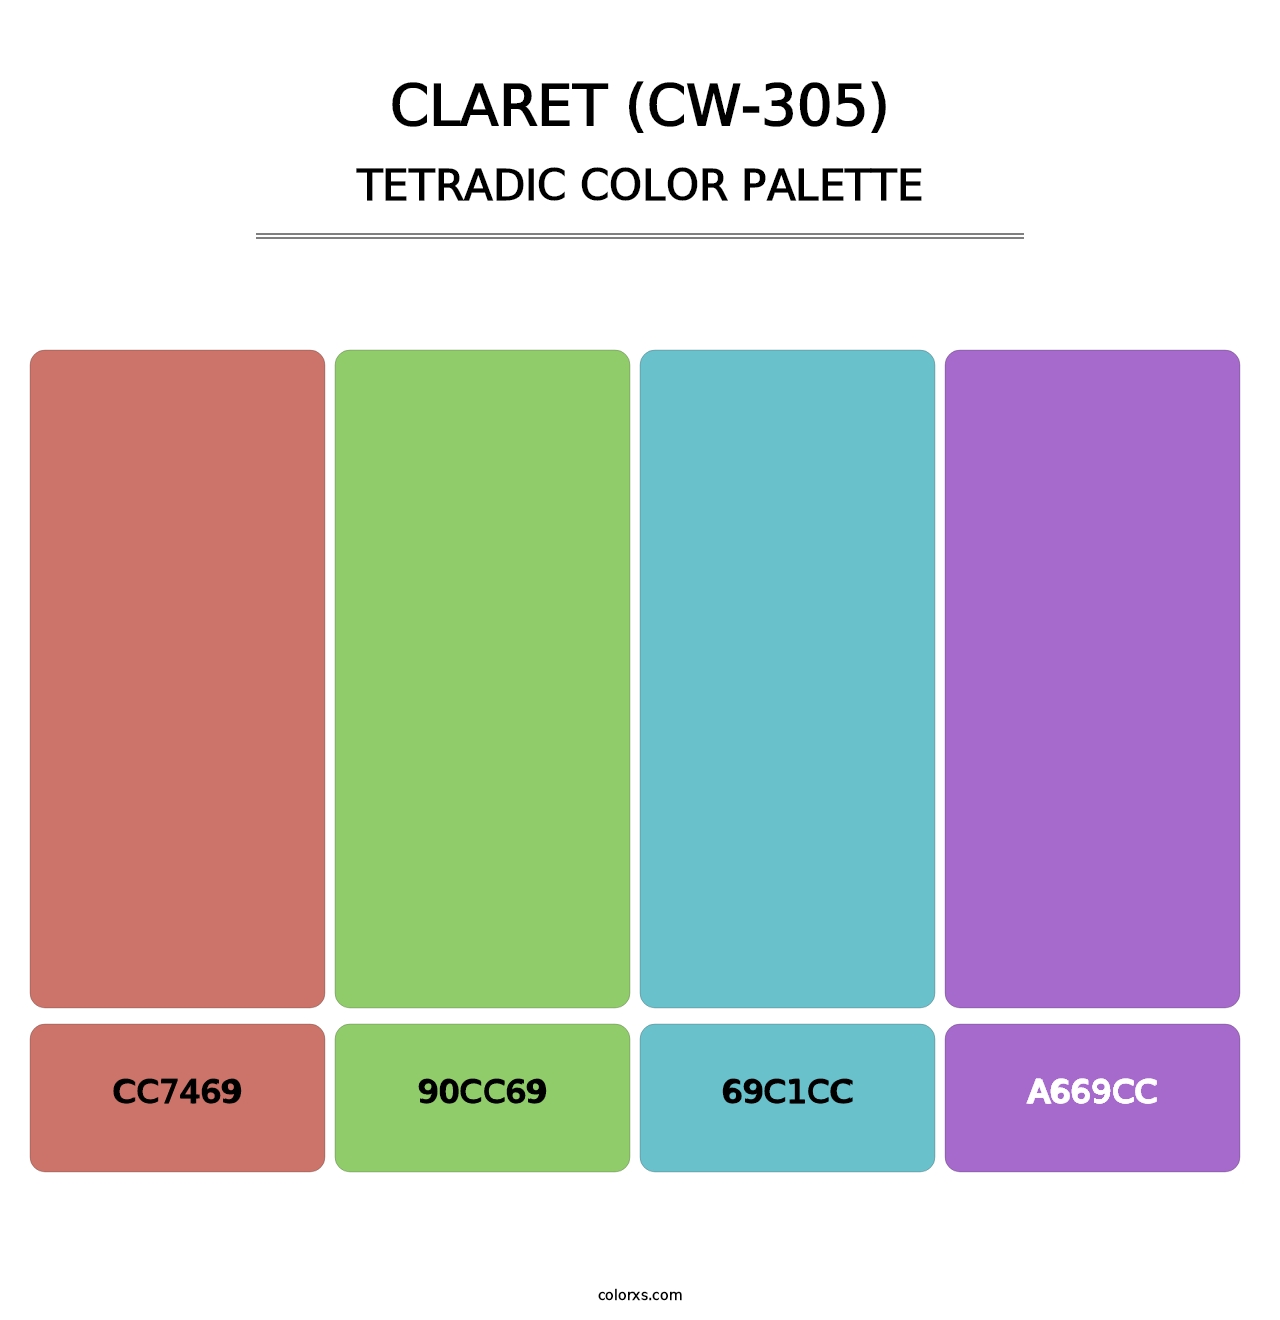 Claret (CW-305) - Tetradic Color Palette